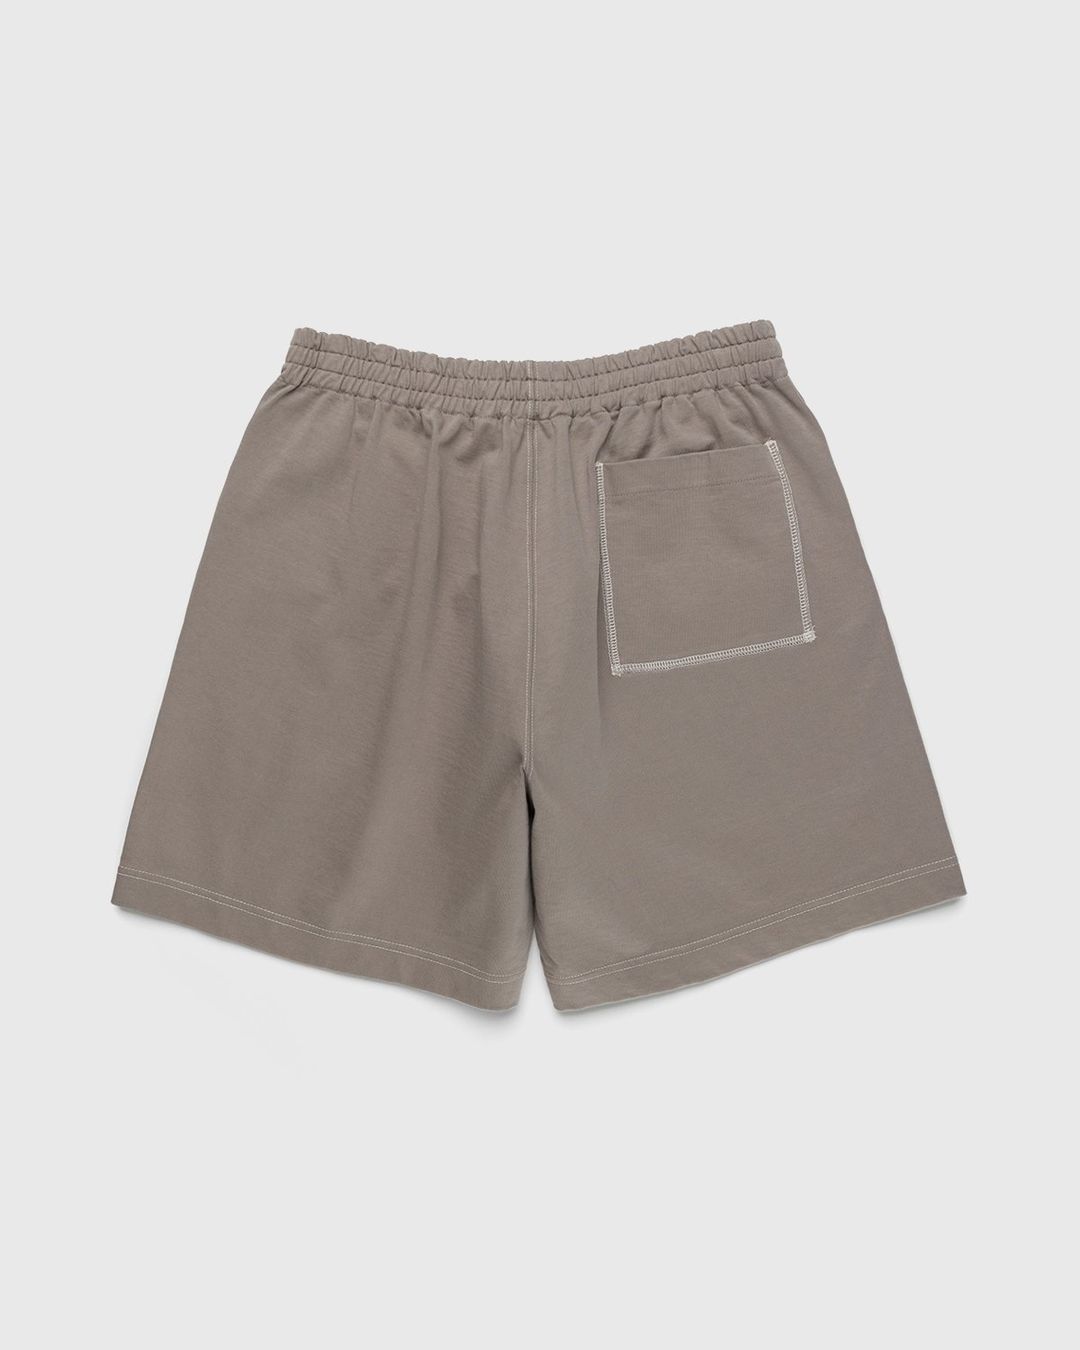 Auralee – High Density Cotton Jersey Shorts Grey Beige | Highsnobiety Shop